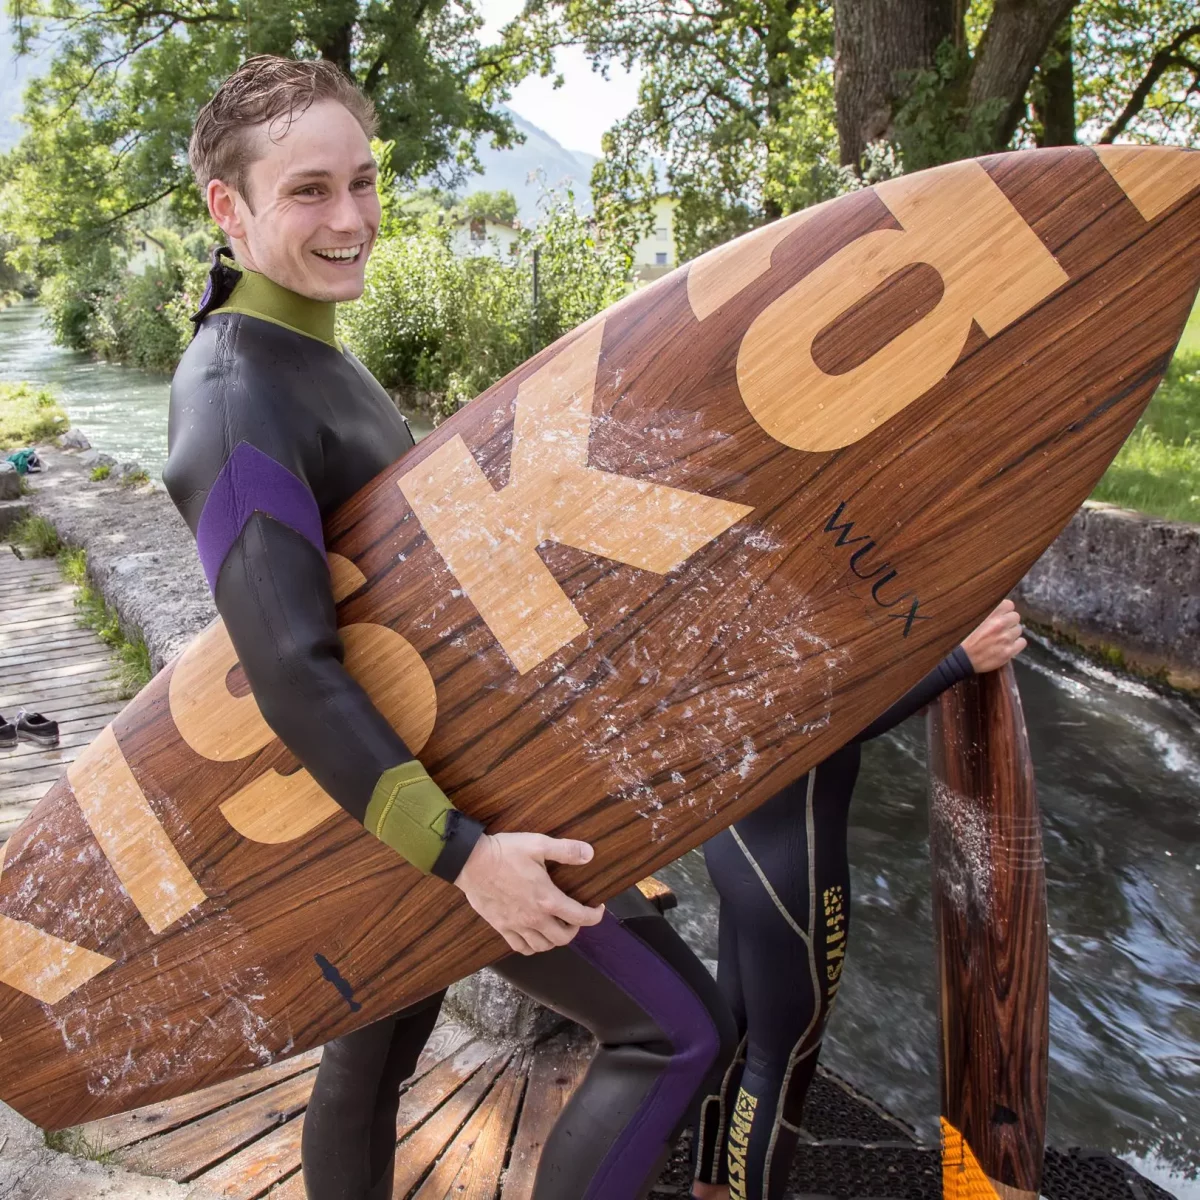 KISKA transportation designer holding the KISKA surfboard at the Salzburg Almkanal